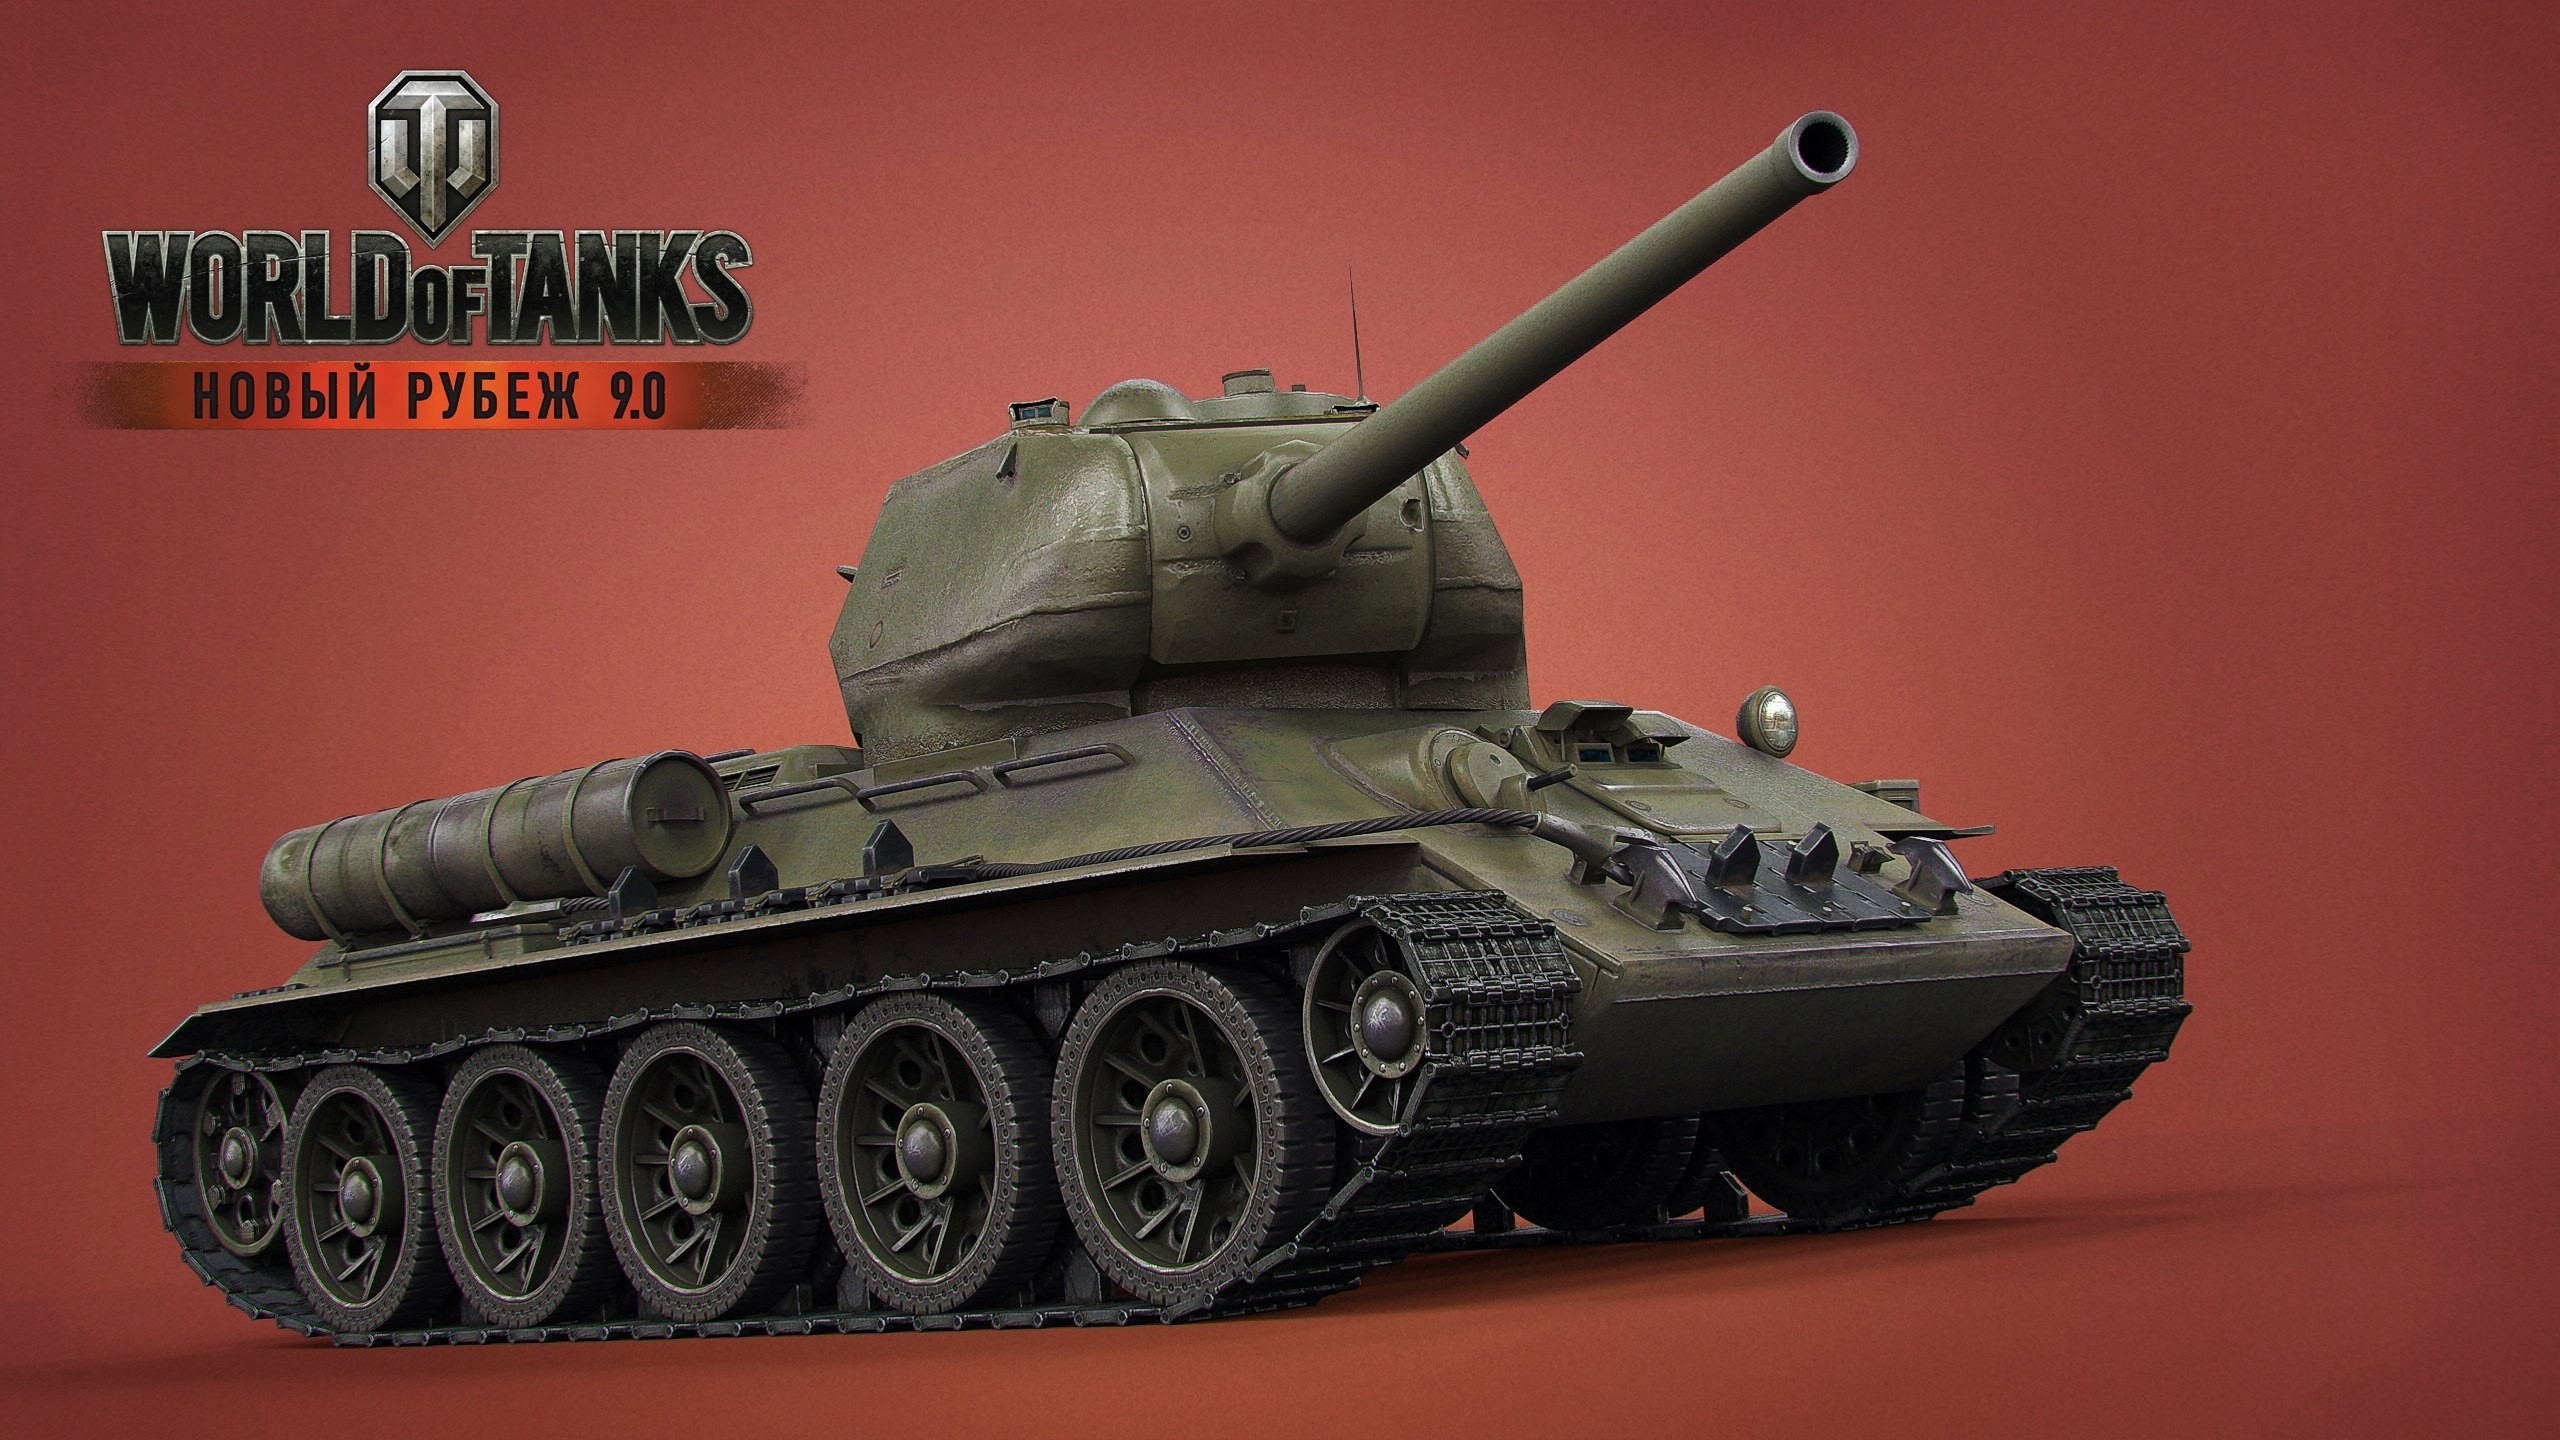 Скачать фото из игры world of tanks   лучшие обои (14)